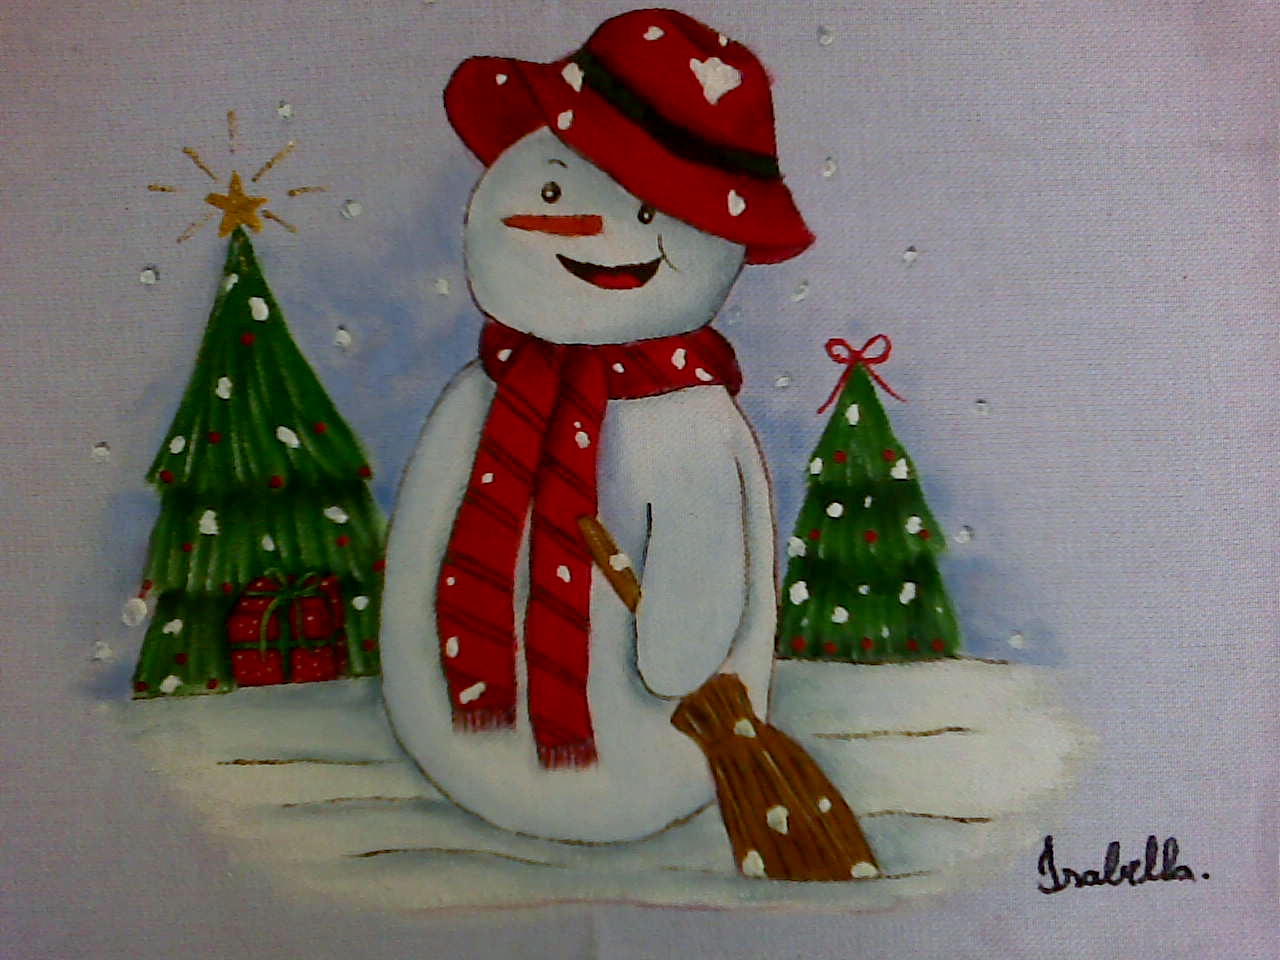 Arte & pintura: Mais pinturas lindas de Natal (natalinas)!Em panos de prato  ou pano e bandeja.